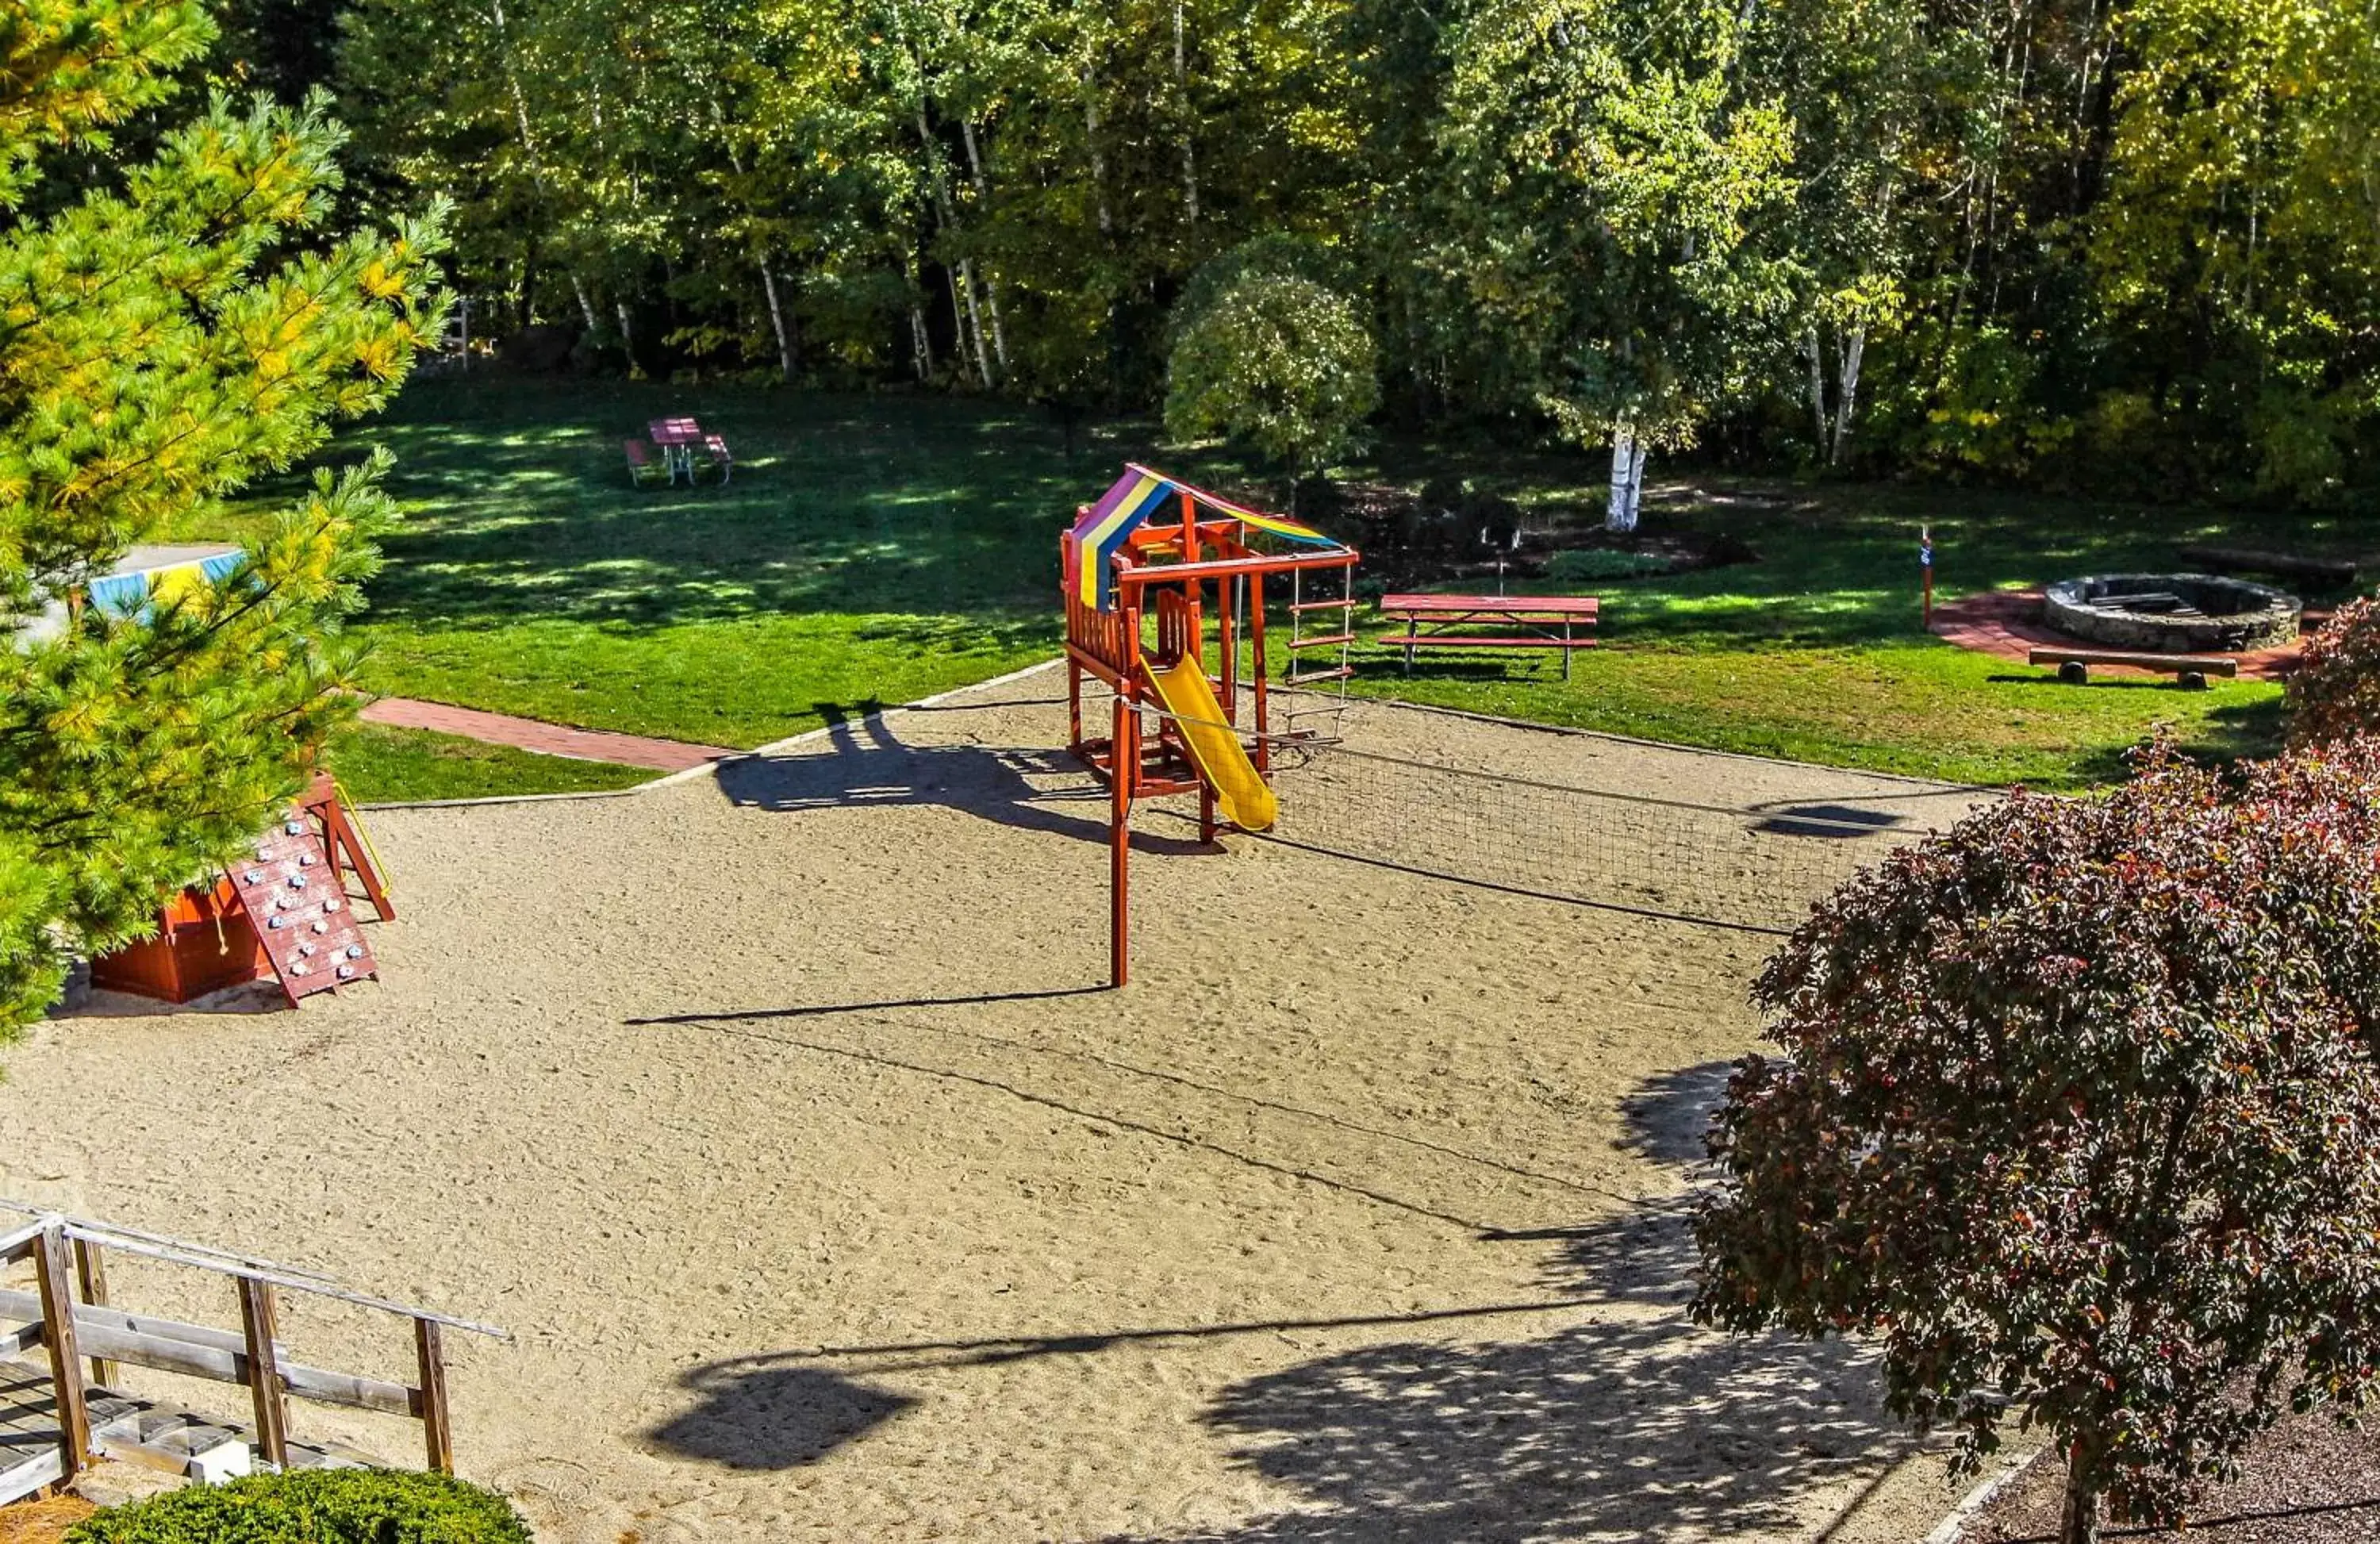 Children play ground, Children's Play Area in InnSeason Resorts Pollard Brook